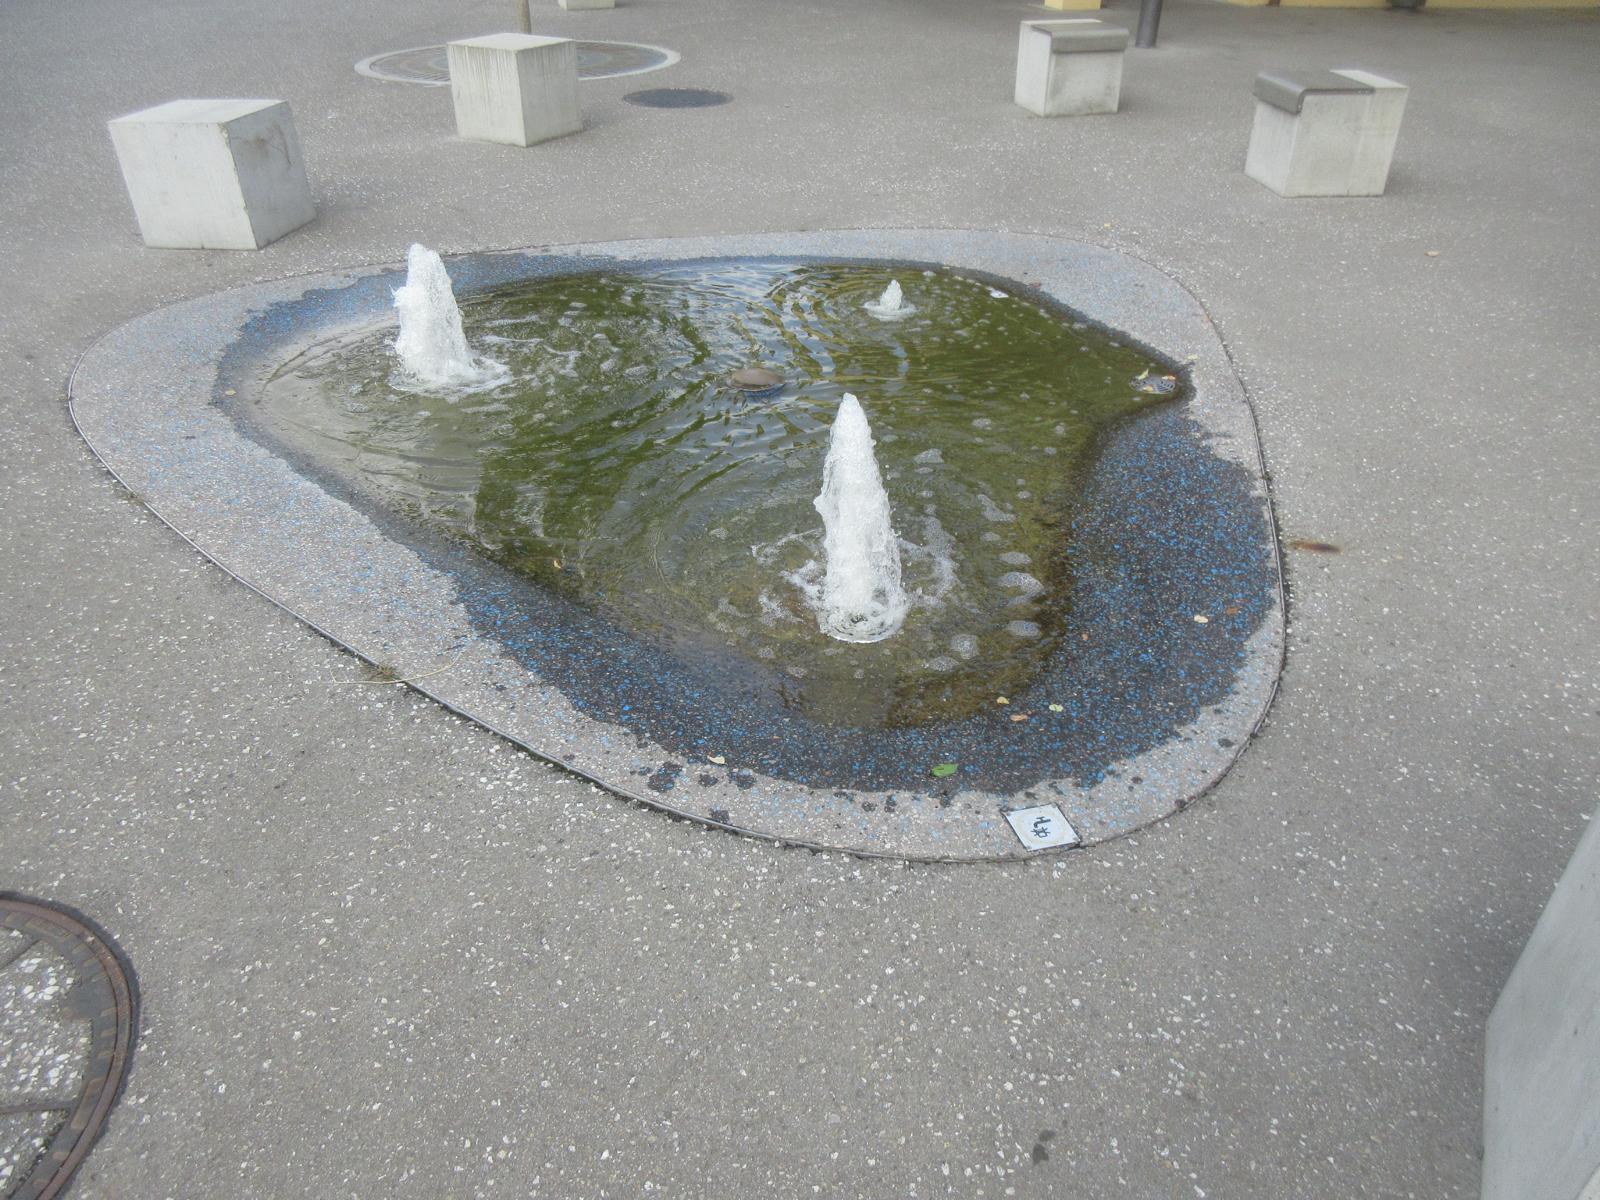 Zentrum Rössli *** 2018 (Neugestaltung des Platzes gem. Luftbild) *** Asphalt mit blauen Steinchen *** -- *** Springbrunnen; kein Trinkwasser